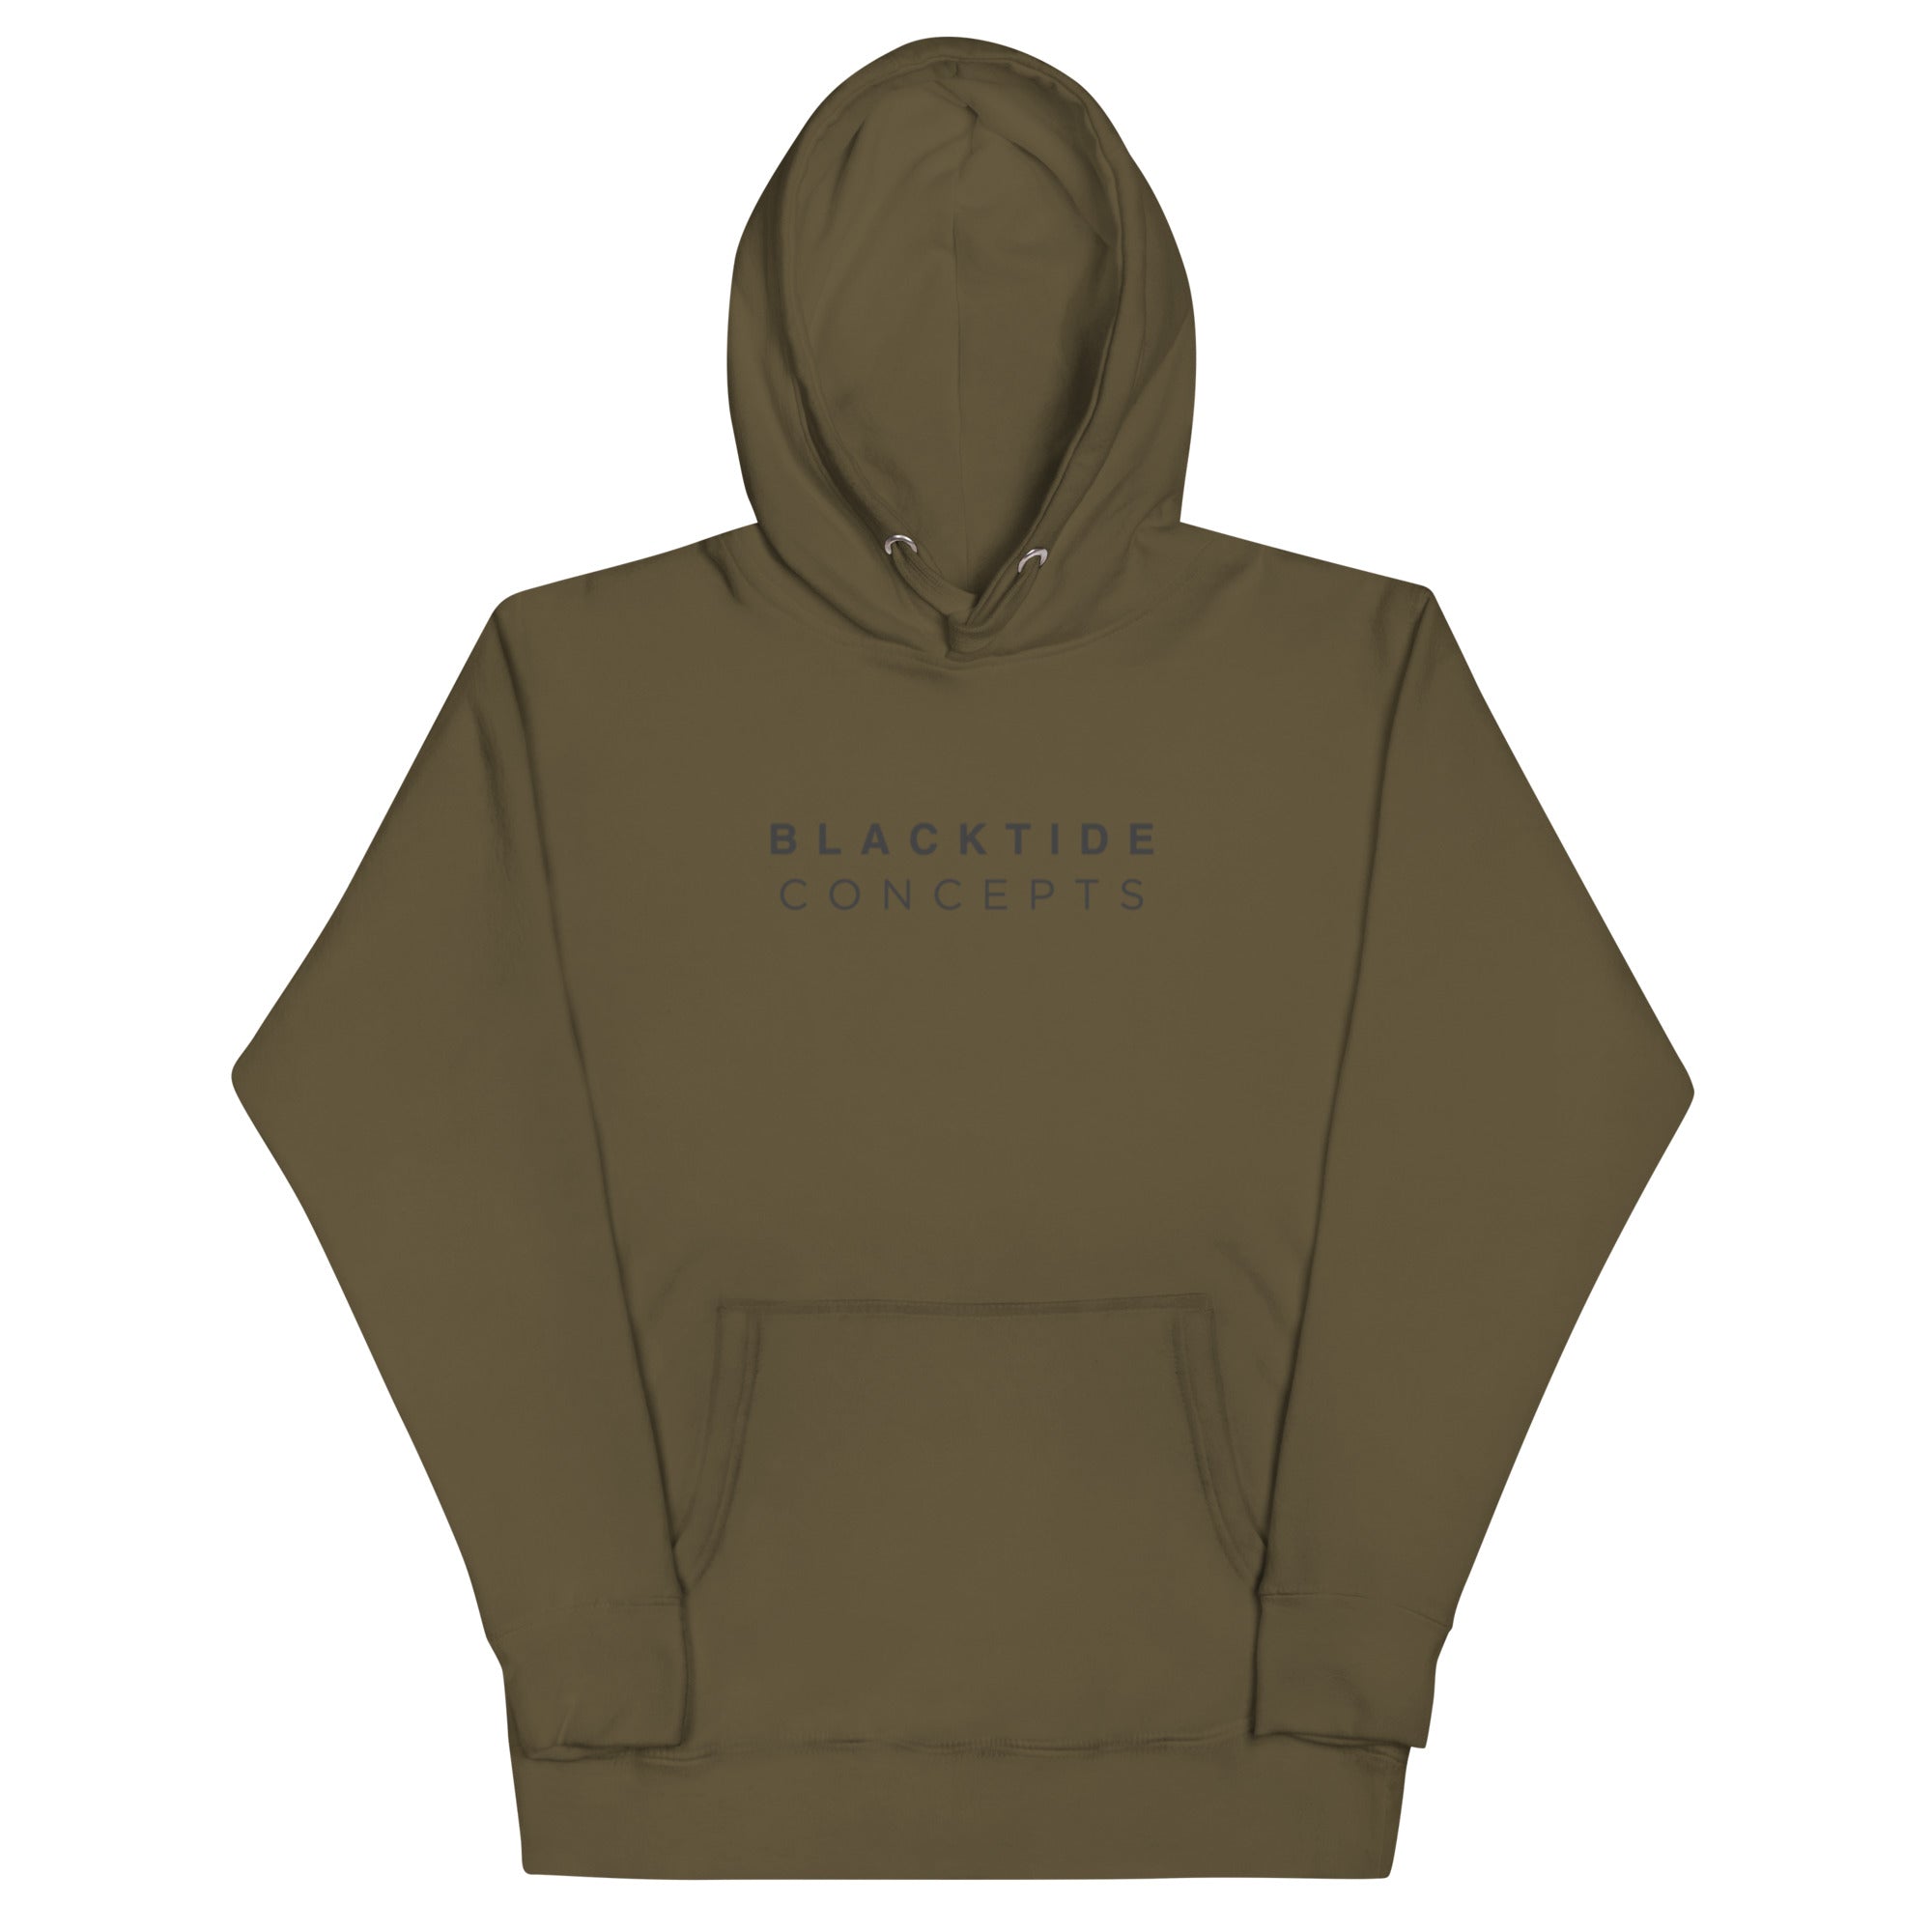 Blacktide Concepts Signature Sweatshirt